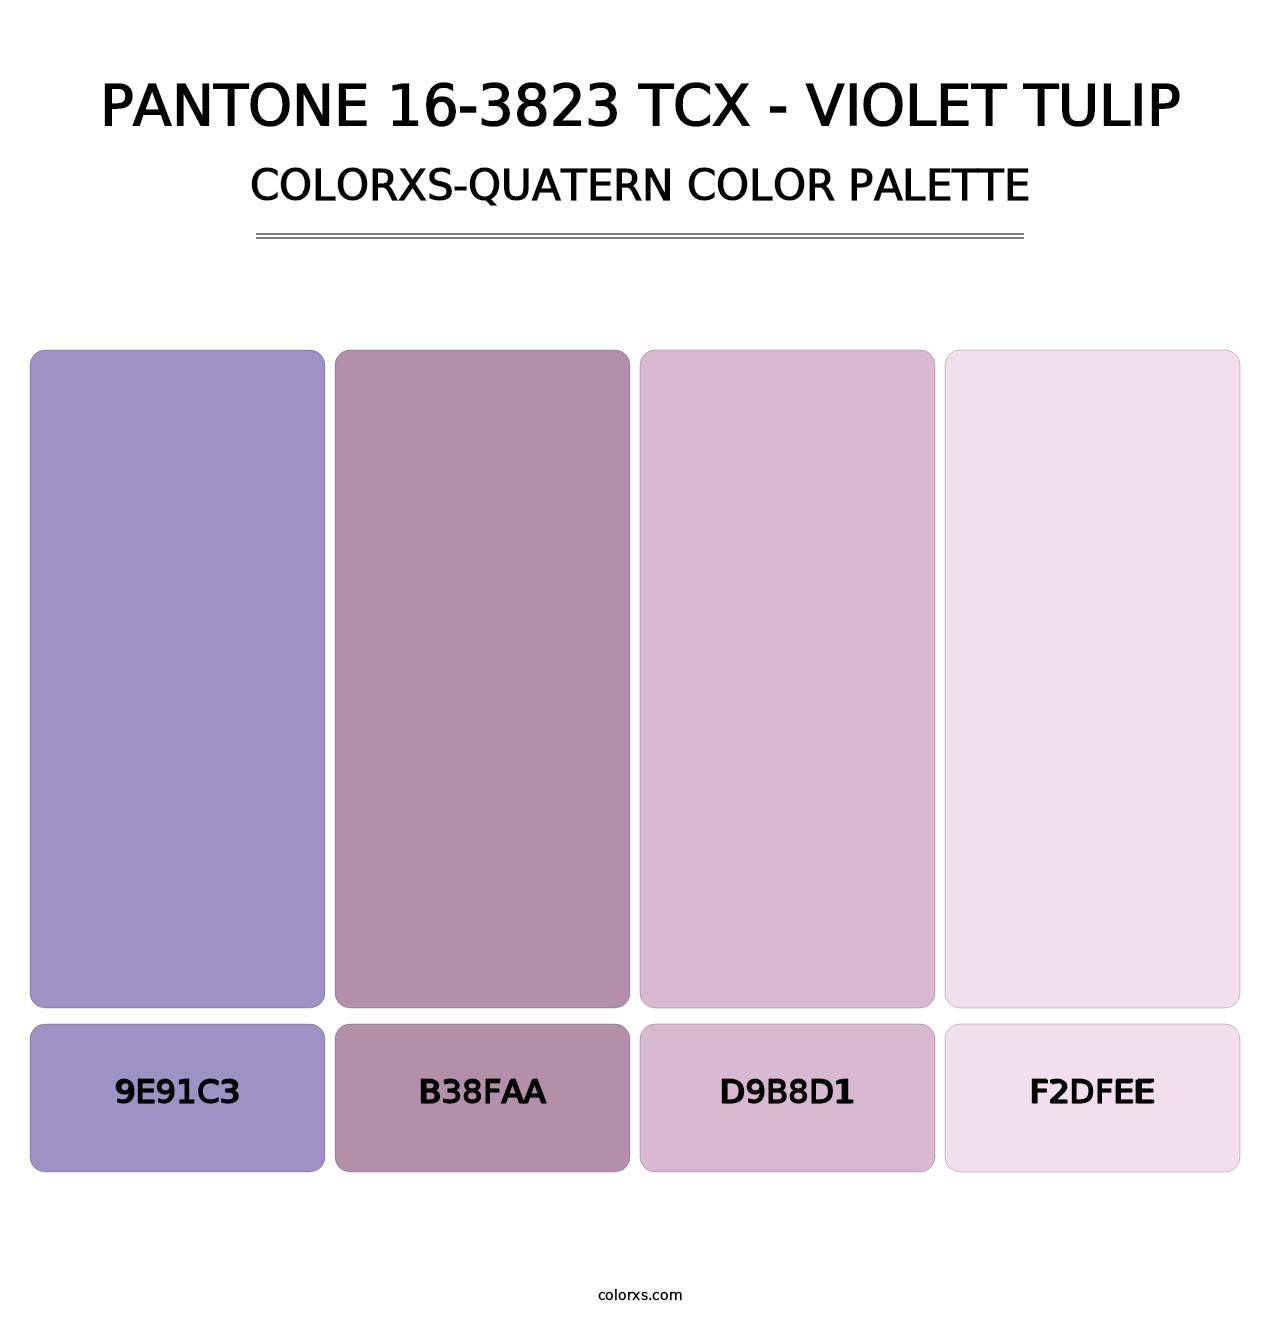 PANTONE 16-3823 TCX - Violet Tulip - Colorxs Quatern Palette